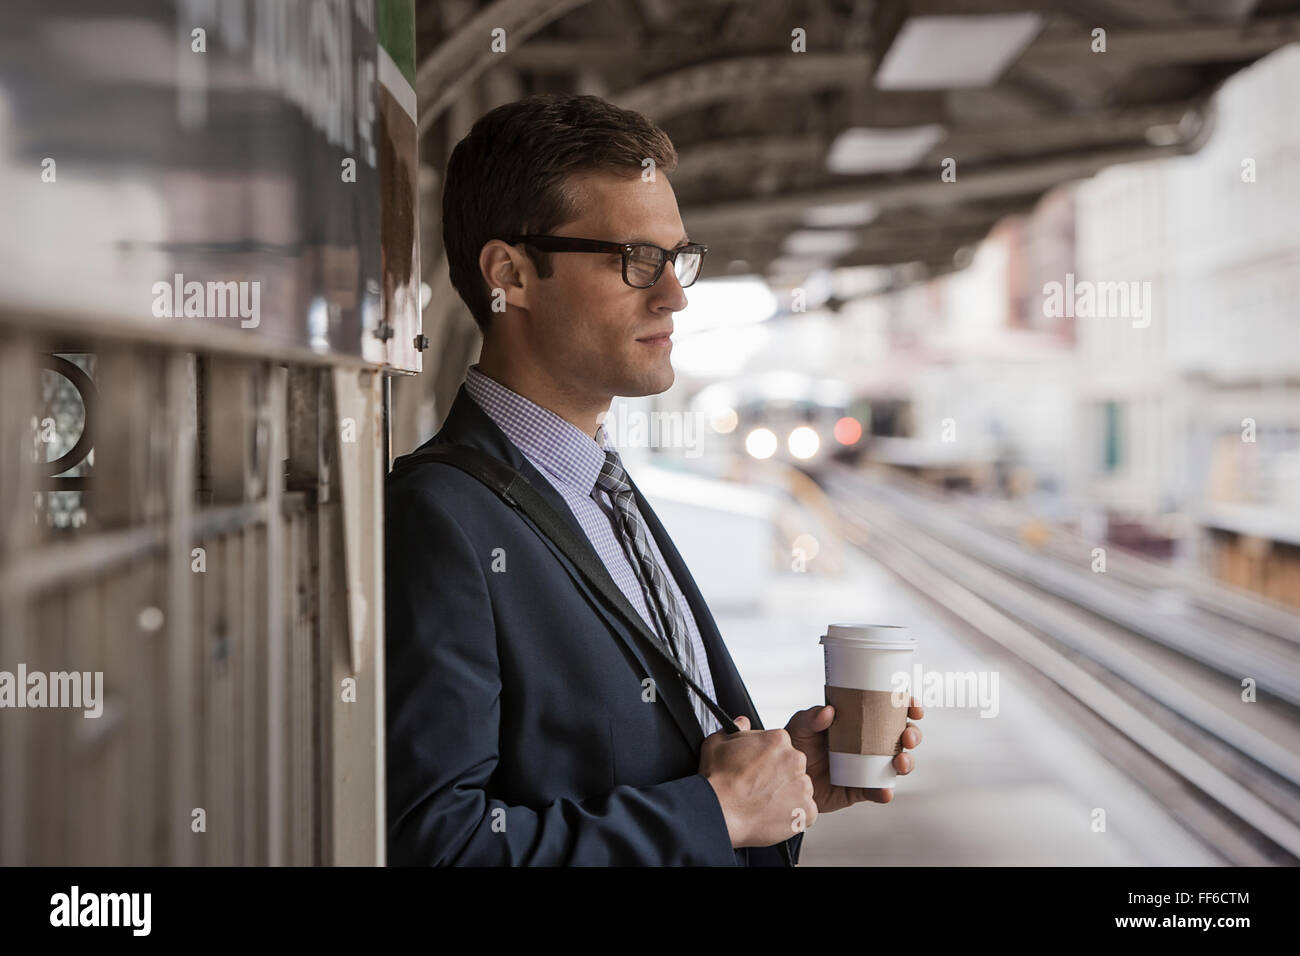 Une journée de travail. Un homme d'affaires en costume et cravate de travail tenant une tasse de café sur une plate-forme ferroviaire. Banque D'Images